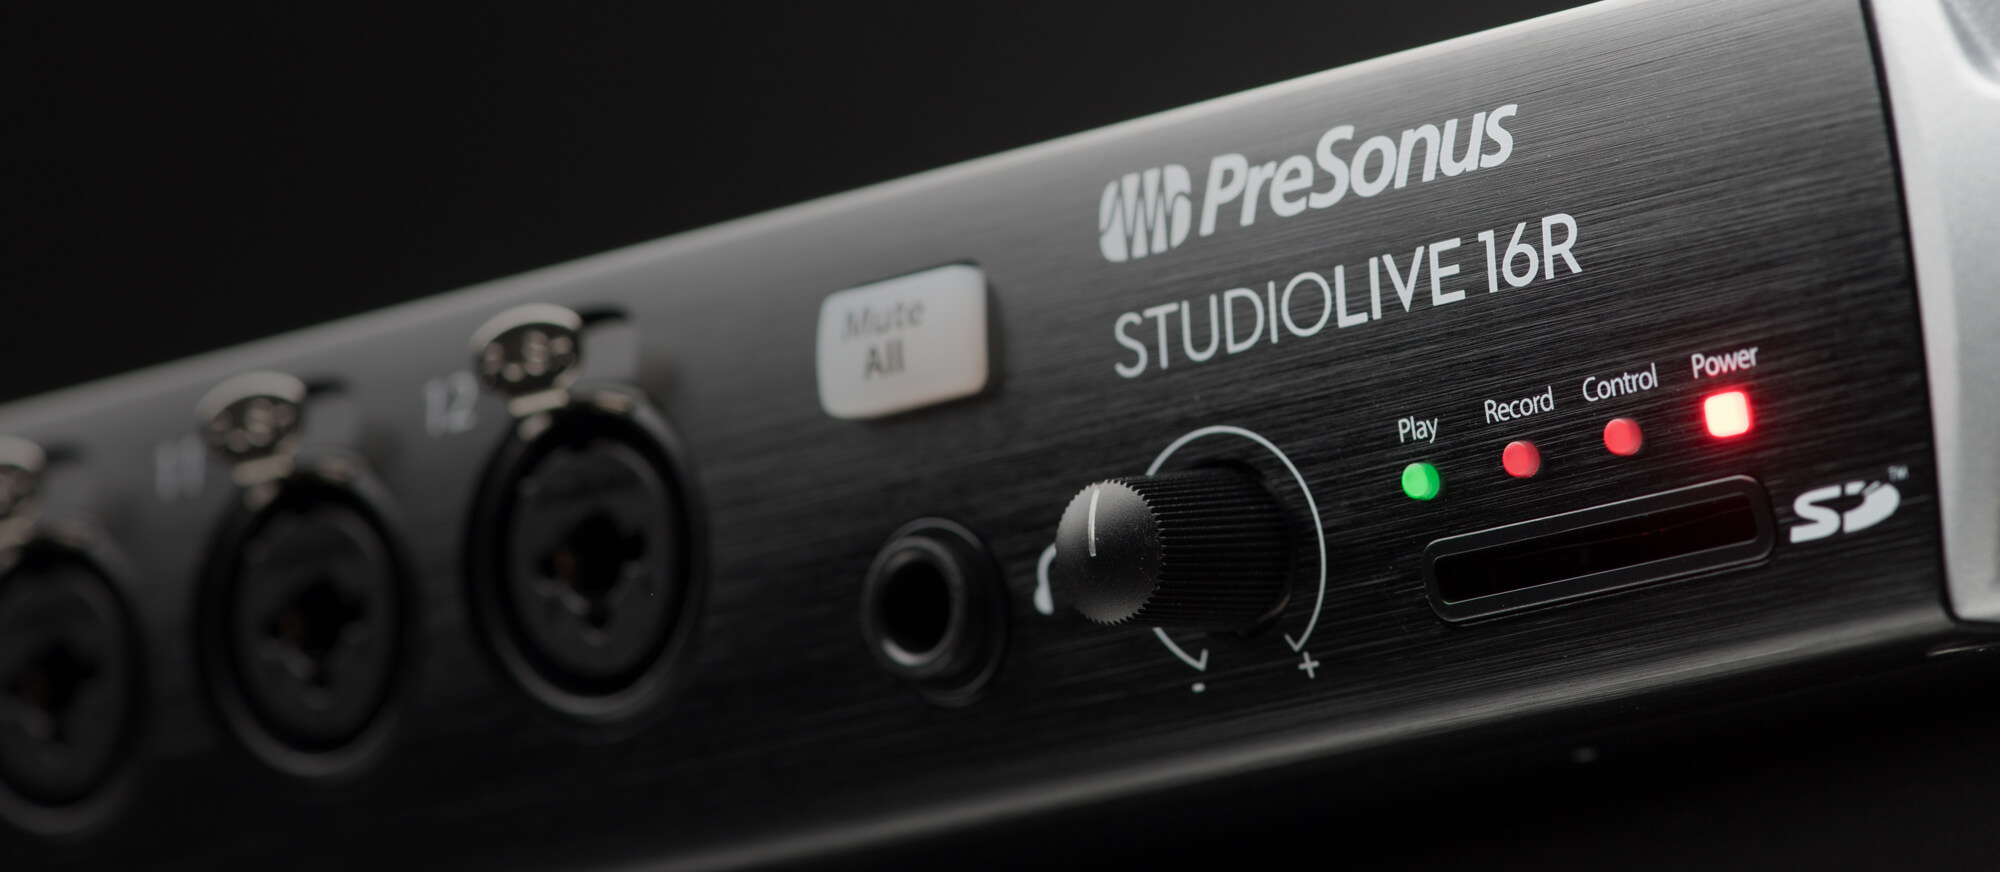 Presonus Studiolive-16r - Mesa de mezcla digital - Variation 3